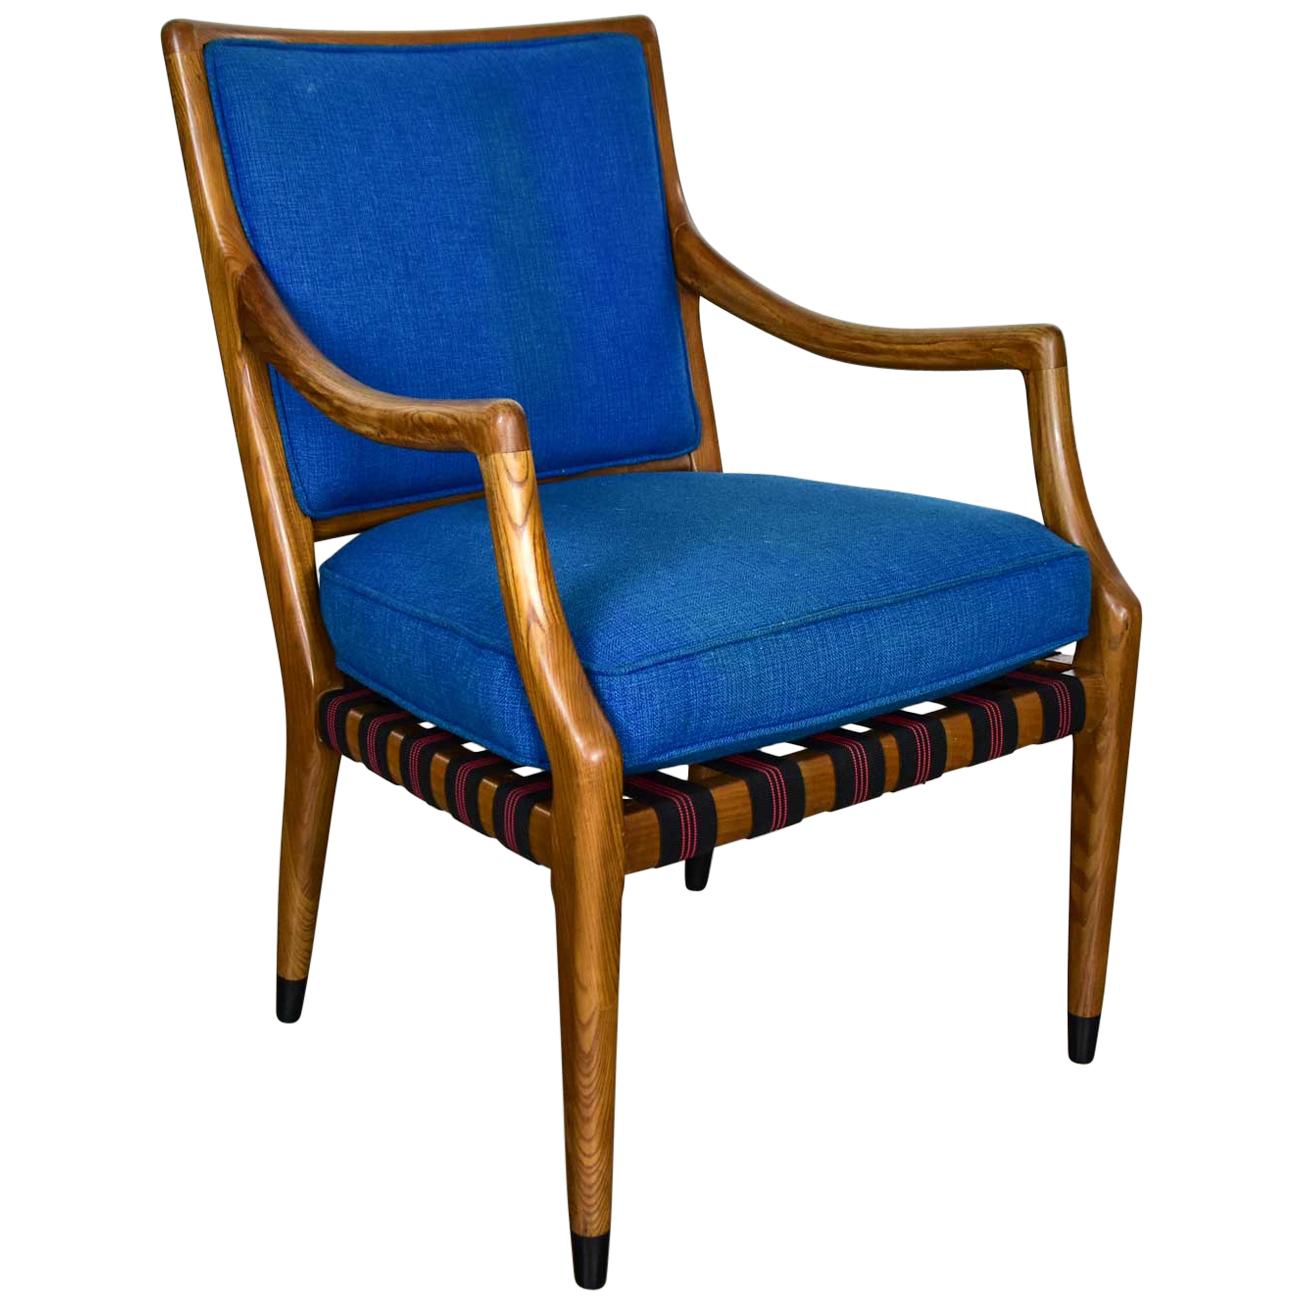 MCM Grand Haven Chair von Jack Van der Molen für Jamestown Lounge mit blauem Stoff